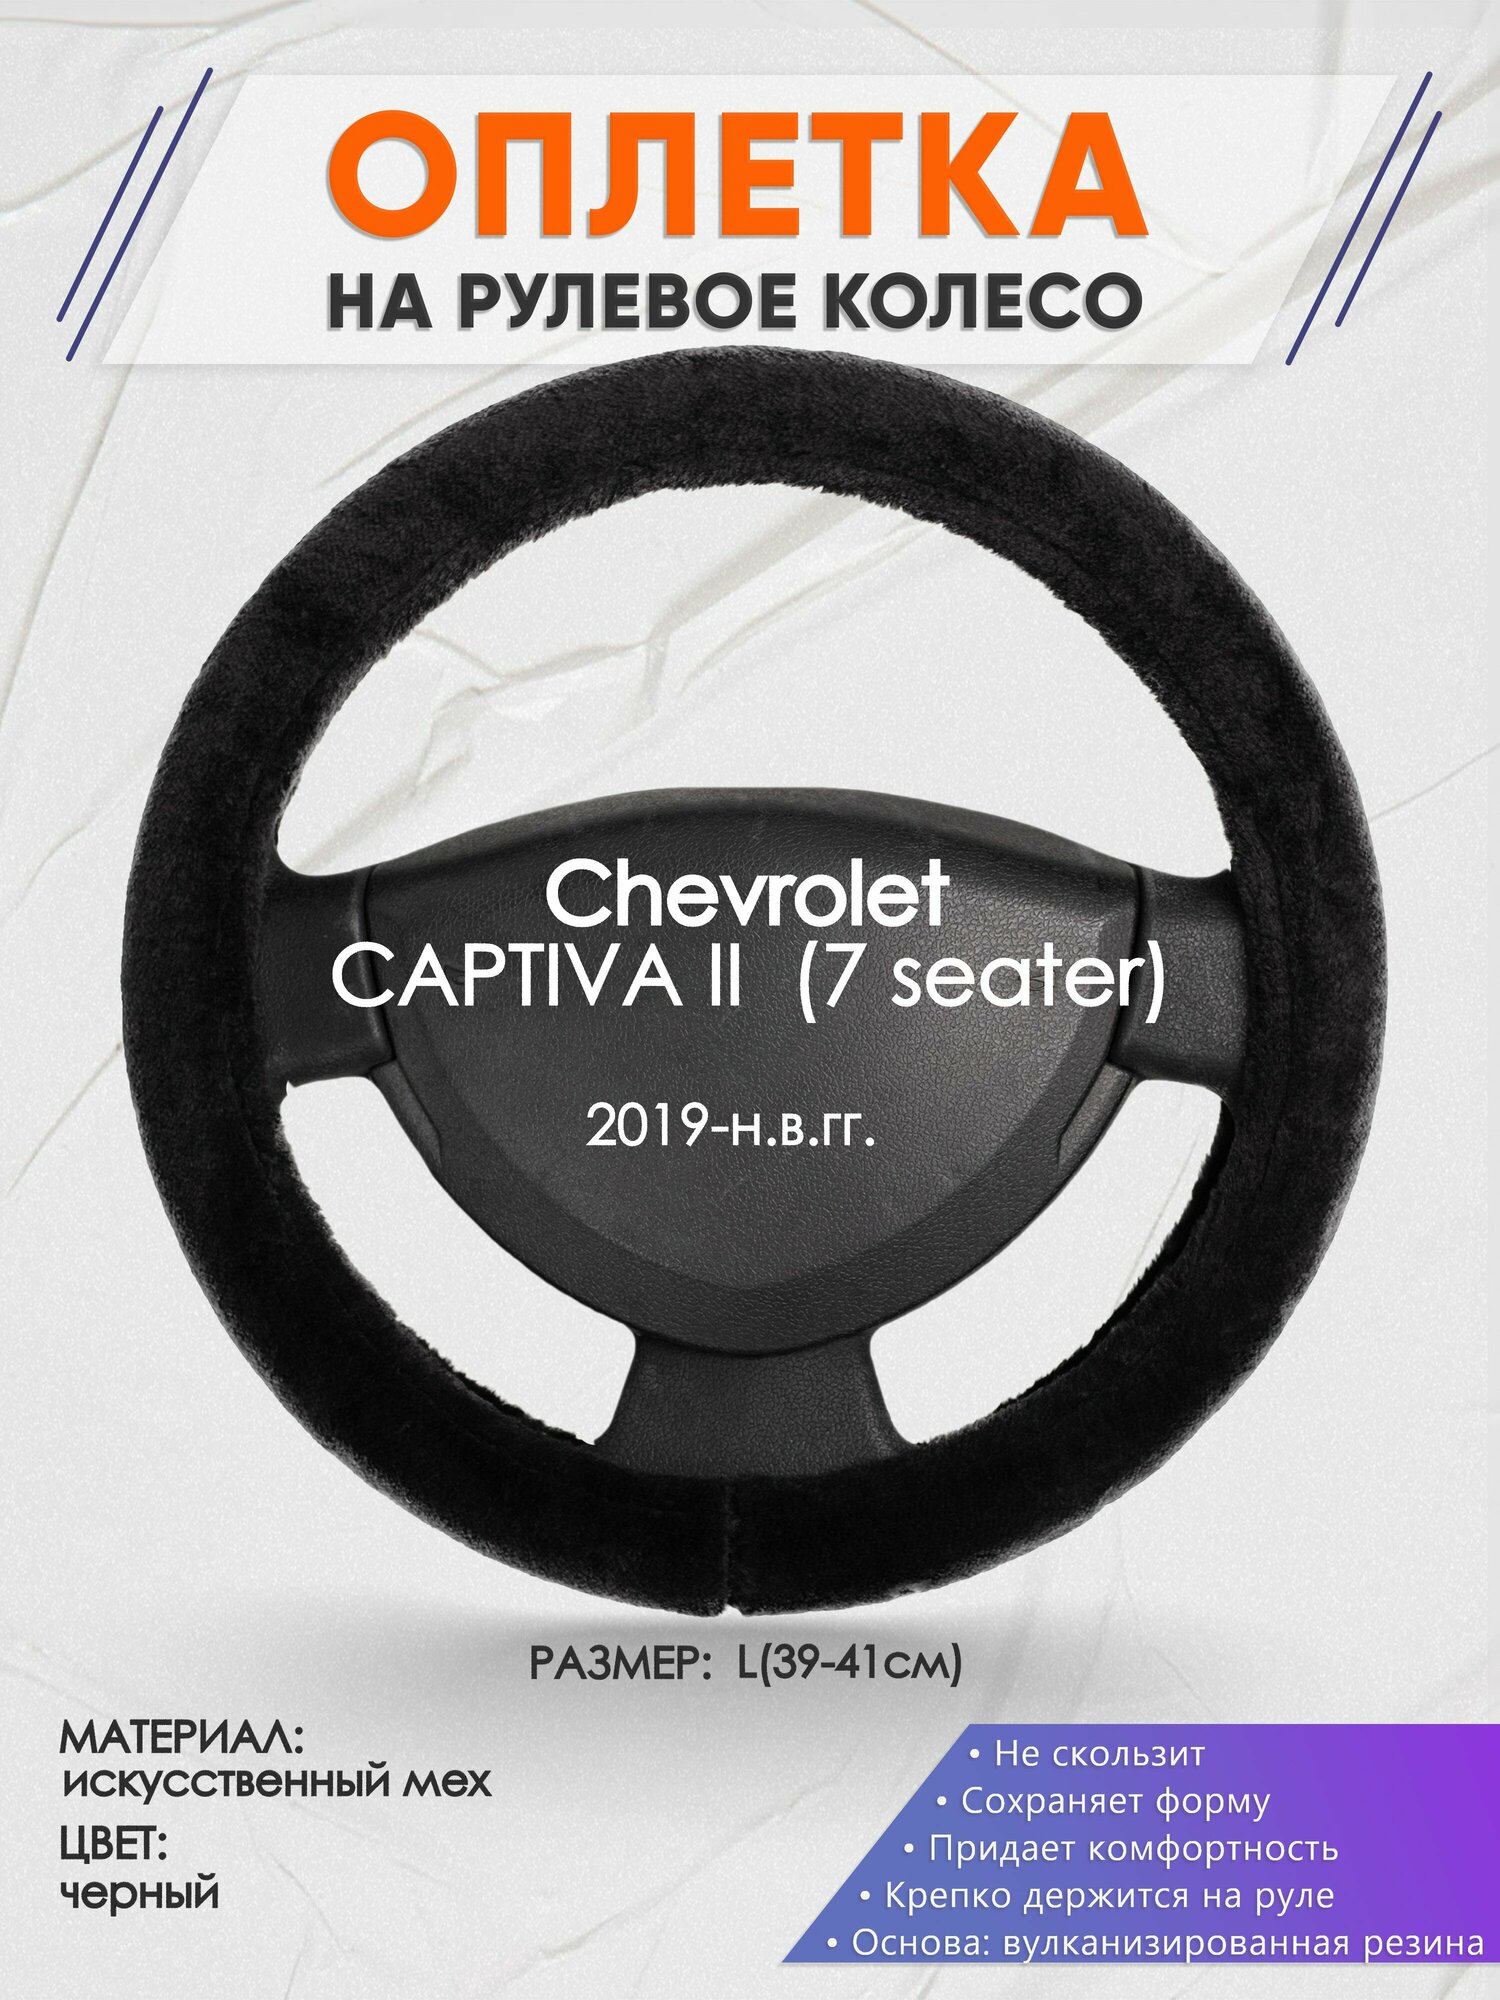 Оплетка на руль для Chevrolet CAPTIVA 2 (7 seater)(Шевроле Каптива) 2019-н. в, L(39-41см), Искусственный мех 45